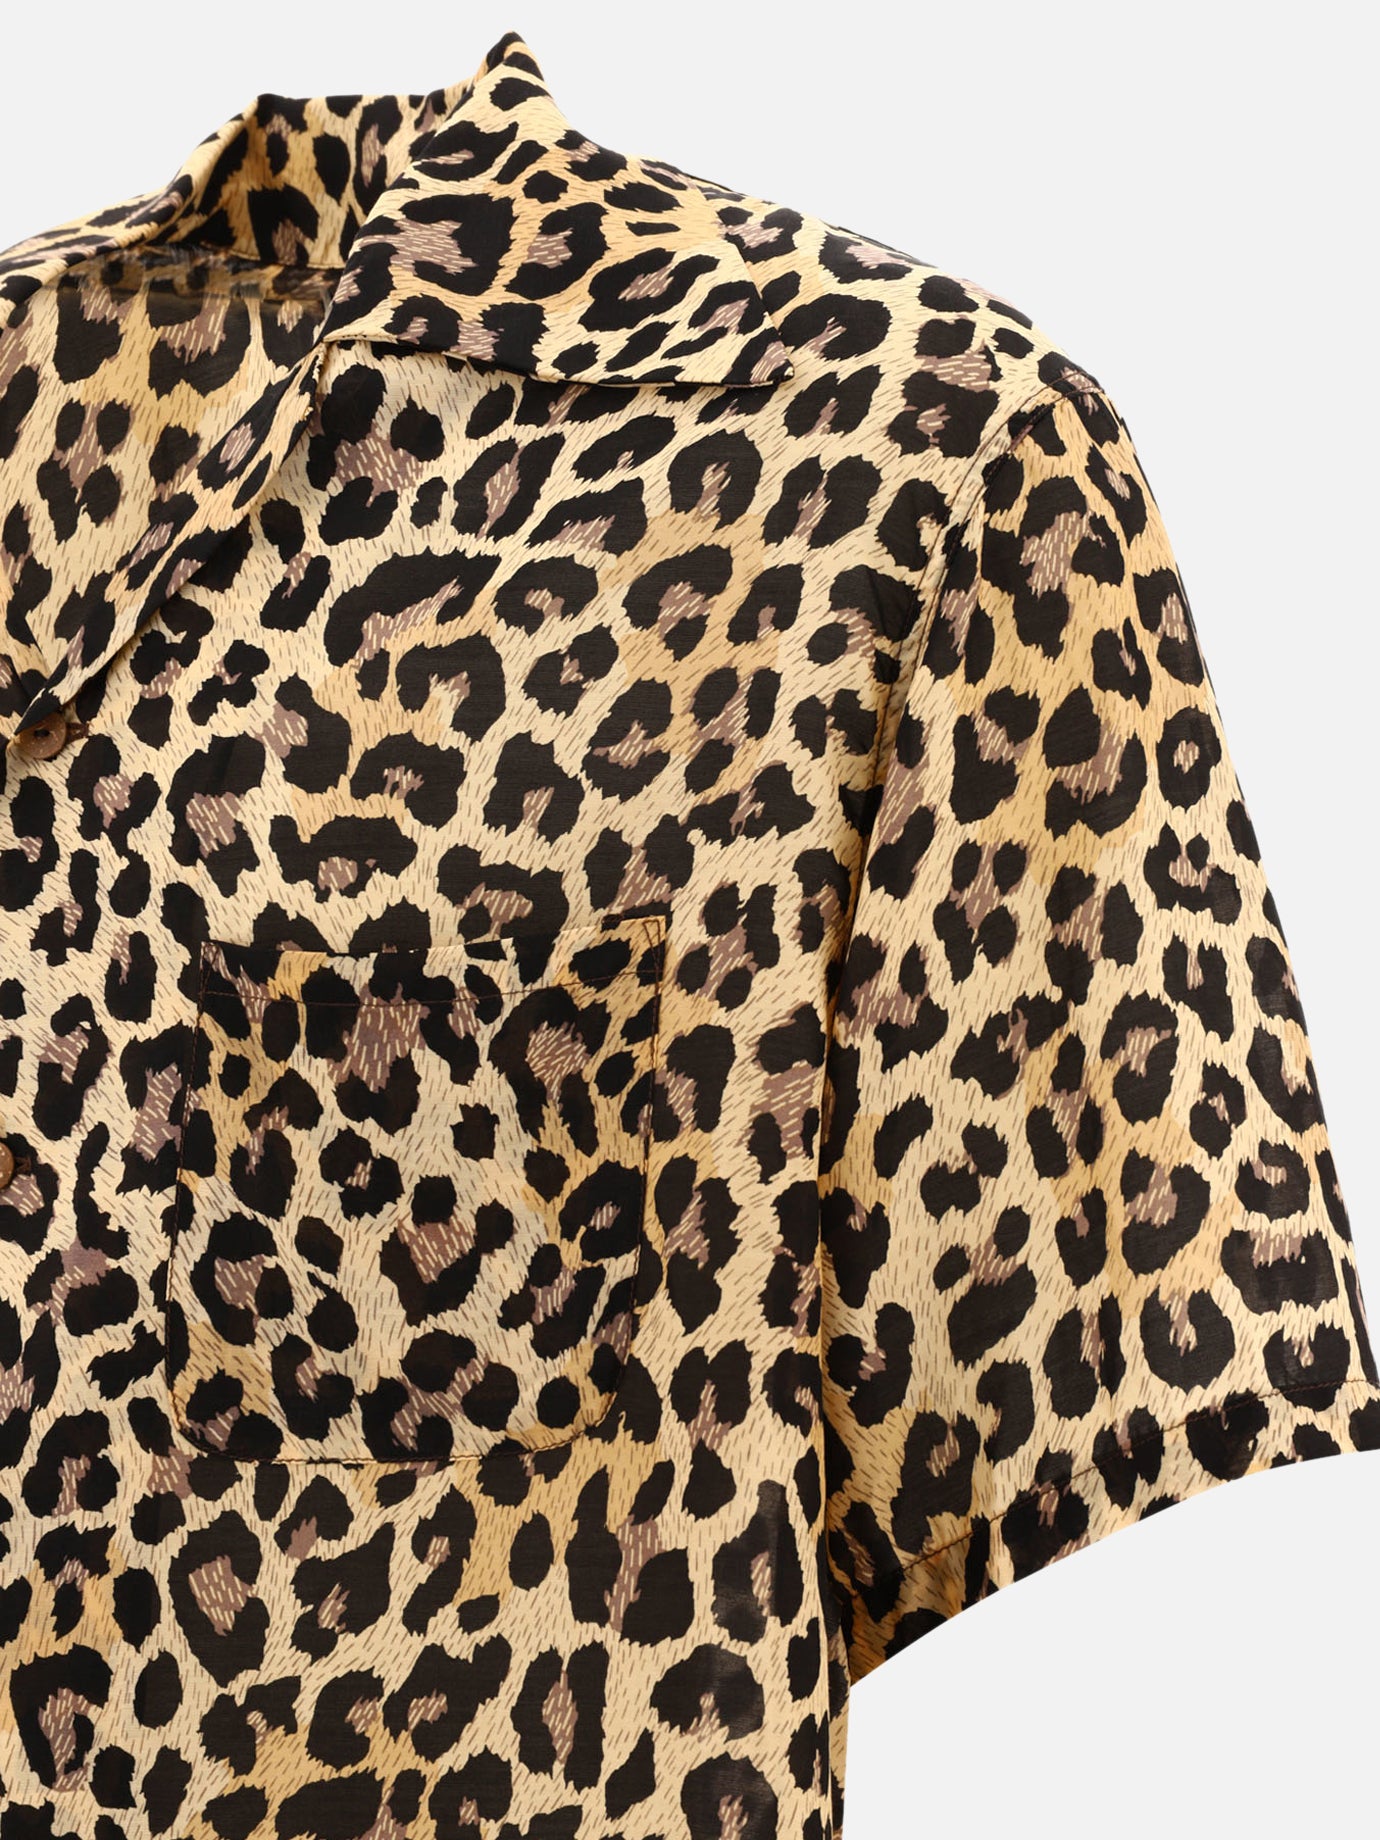 "Leopard" shirt